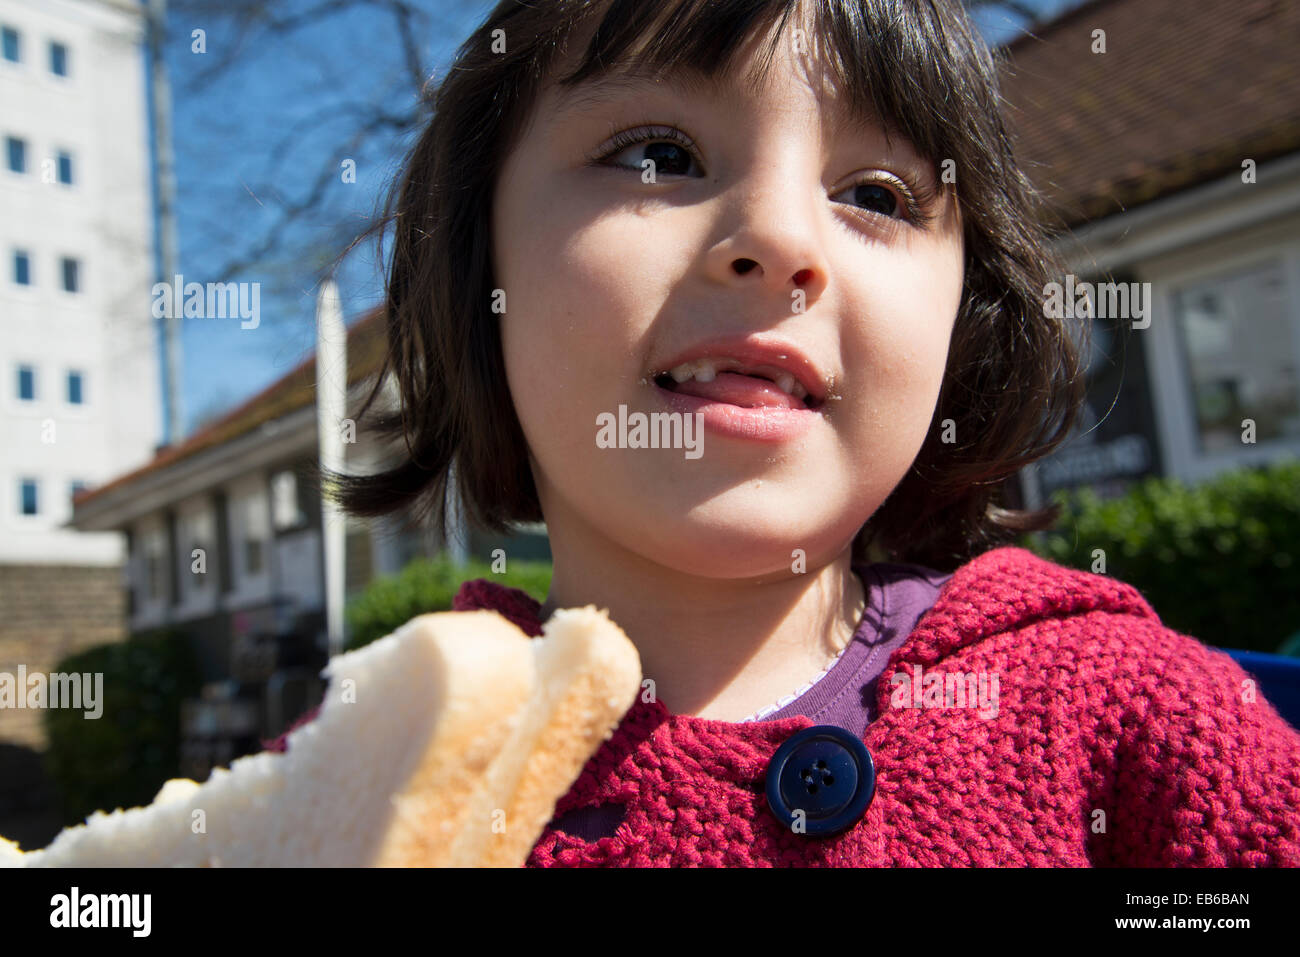 Little girl eating white bread sandwich Stock Photo